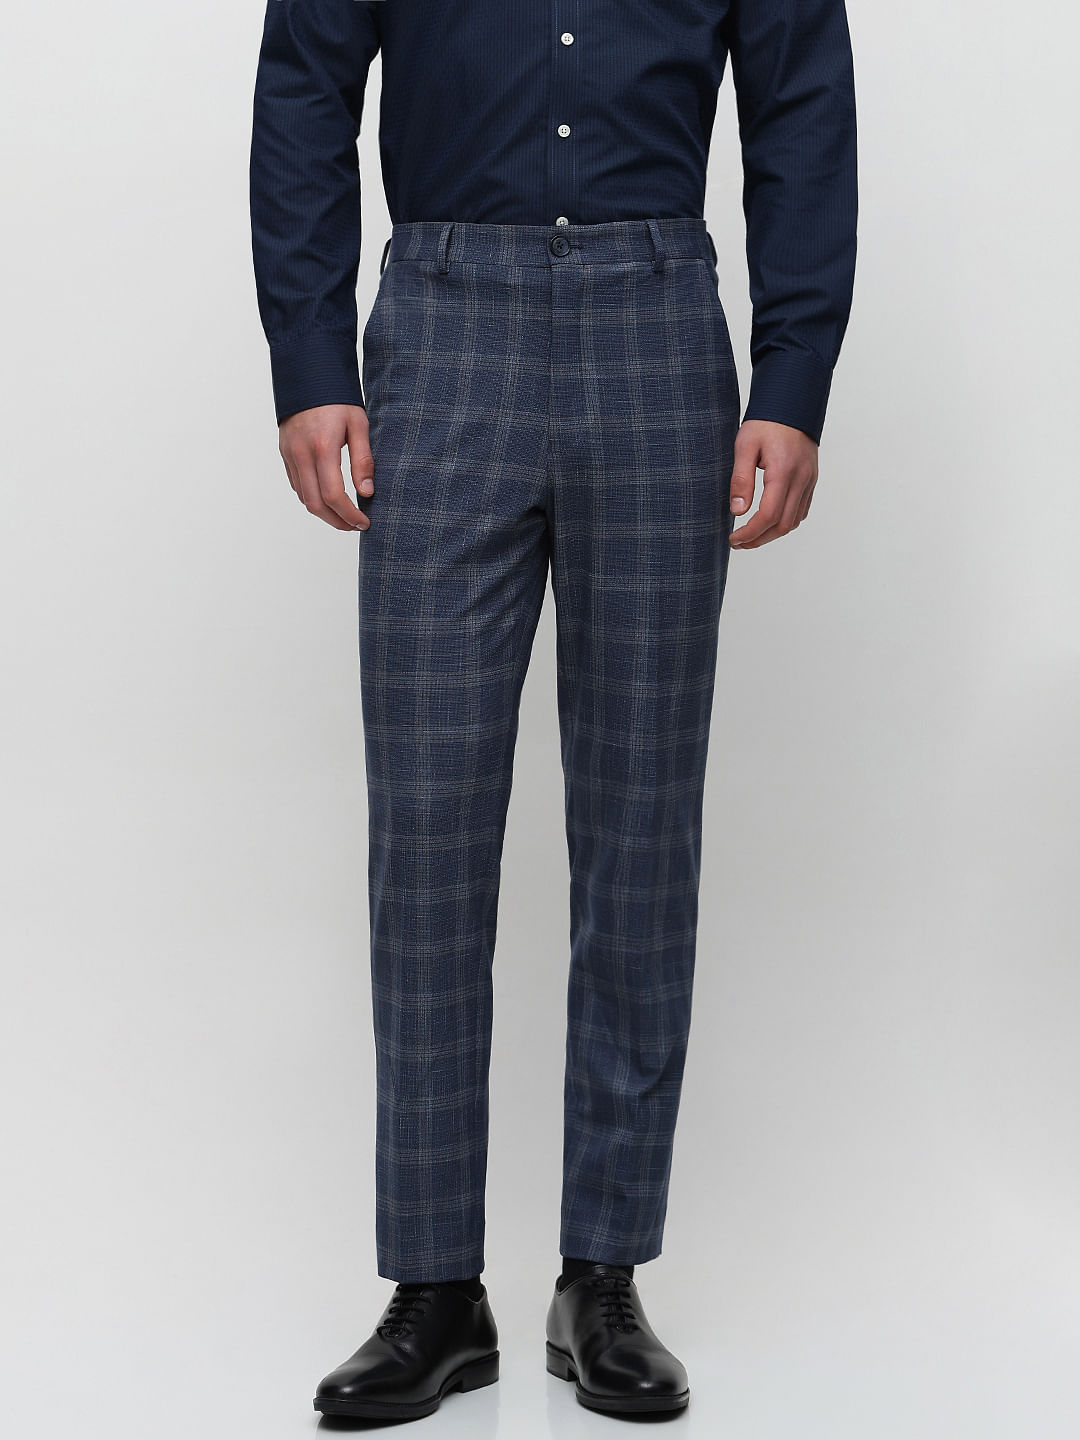 Blue Tweed Trousers | Mens Tweed Trousers | Mens Tweed Suits | Marc Darcy  Menswear